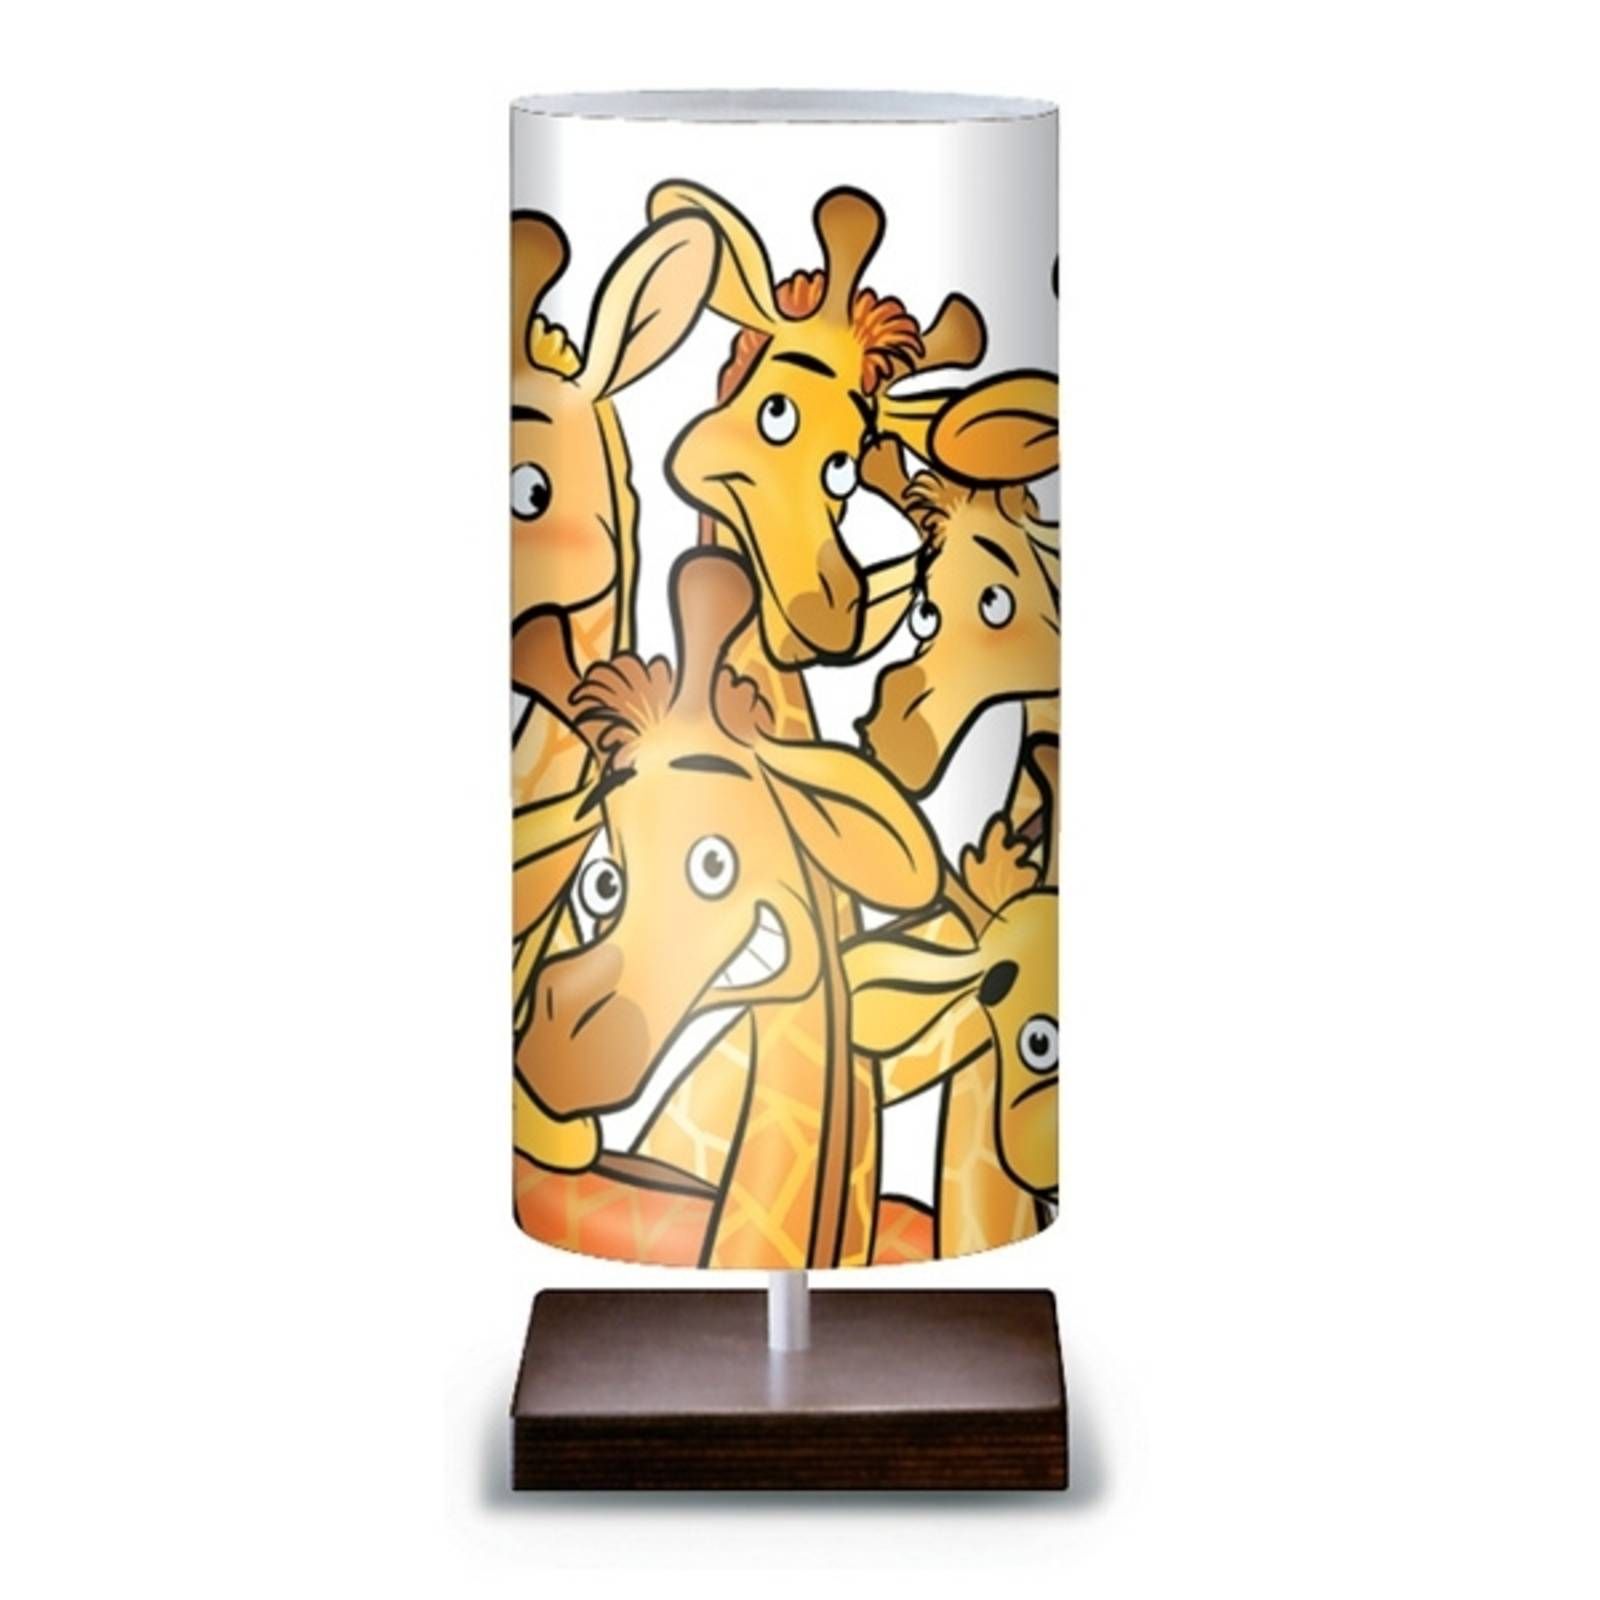 Artempo Italia Stolná lampa Žirafa, Detská izba, plast, E27, 25W, P: 16 cm, L: 16 cm, K: 39cm